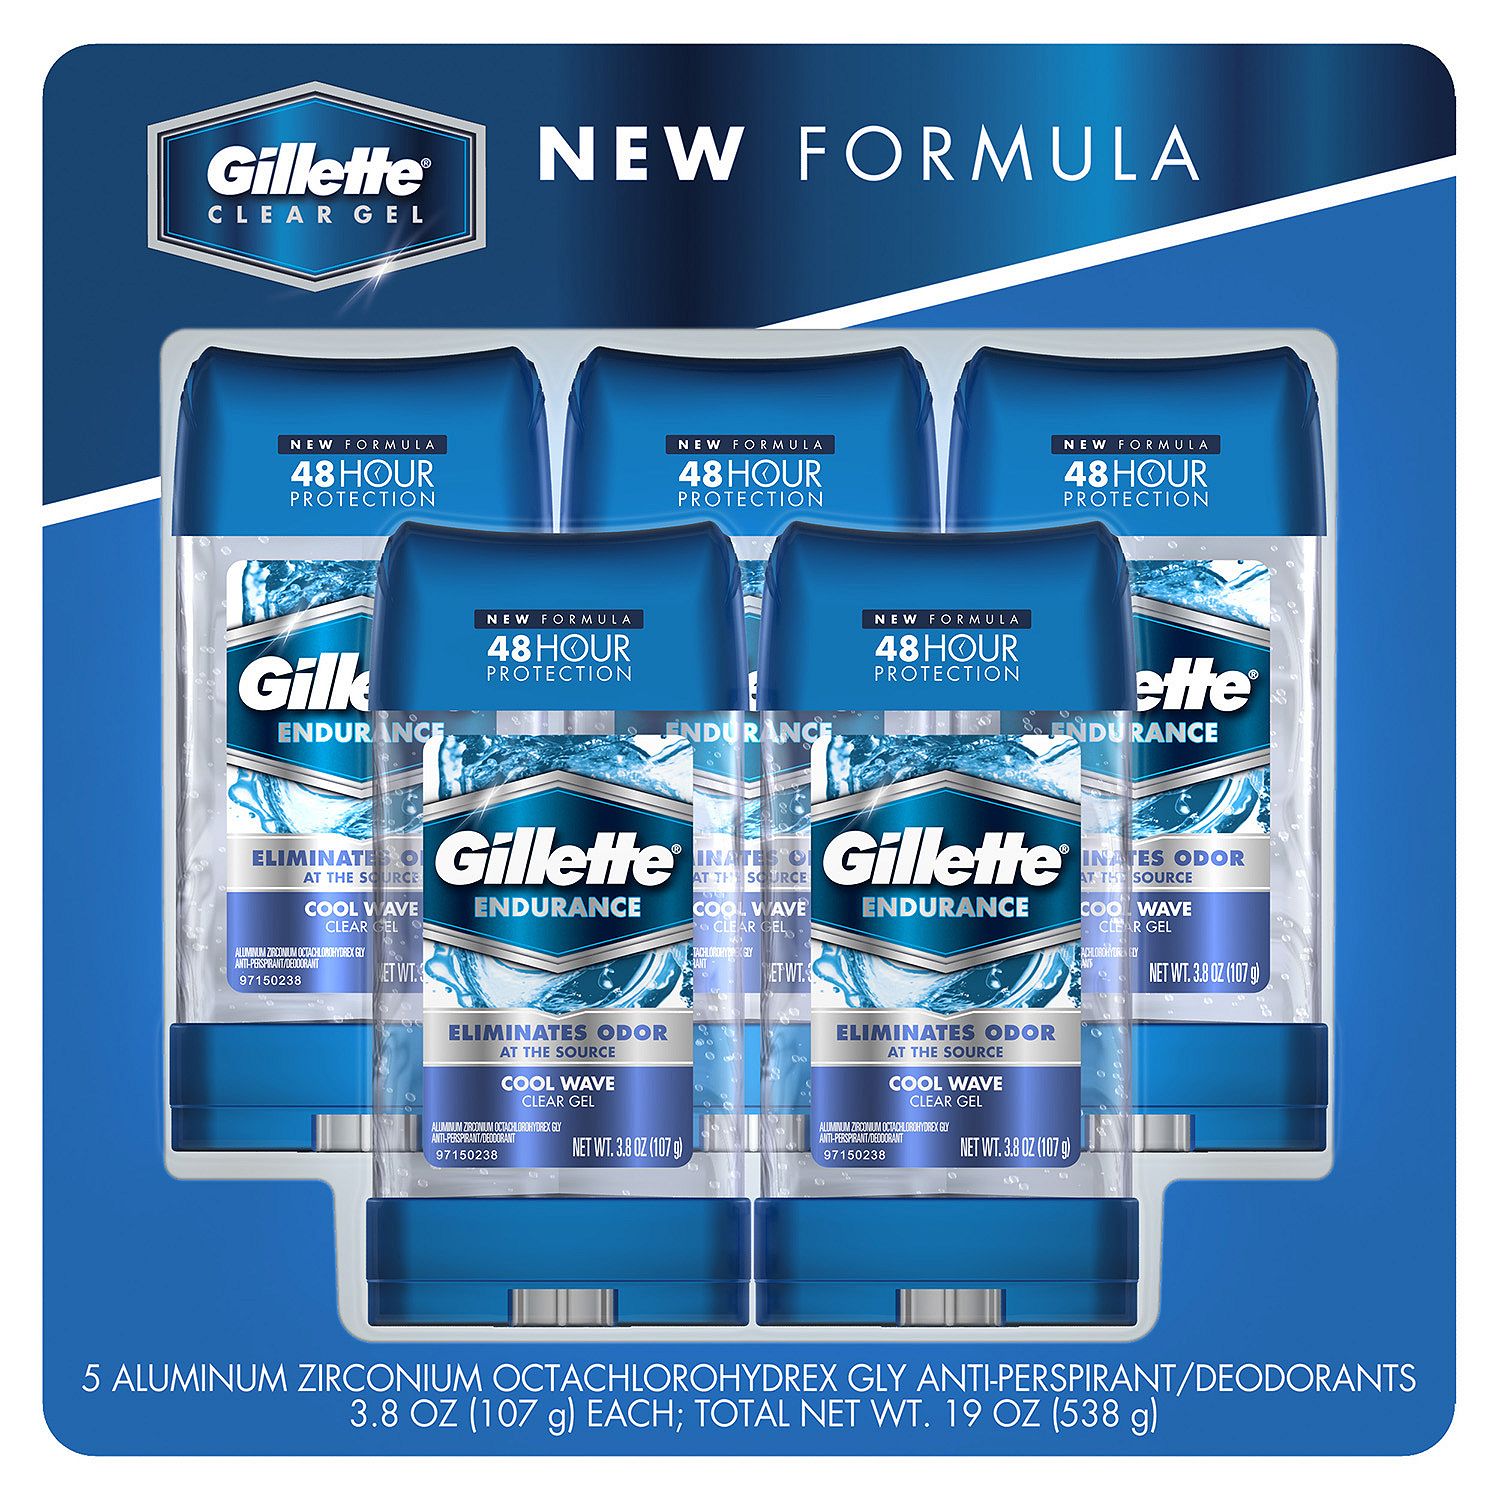 Gillette Endurance Antiperspirant and Deodorant, Cool Wave Clear Gel, 3.8 oz (107g) (5 Pack) - ADDROS.COM